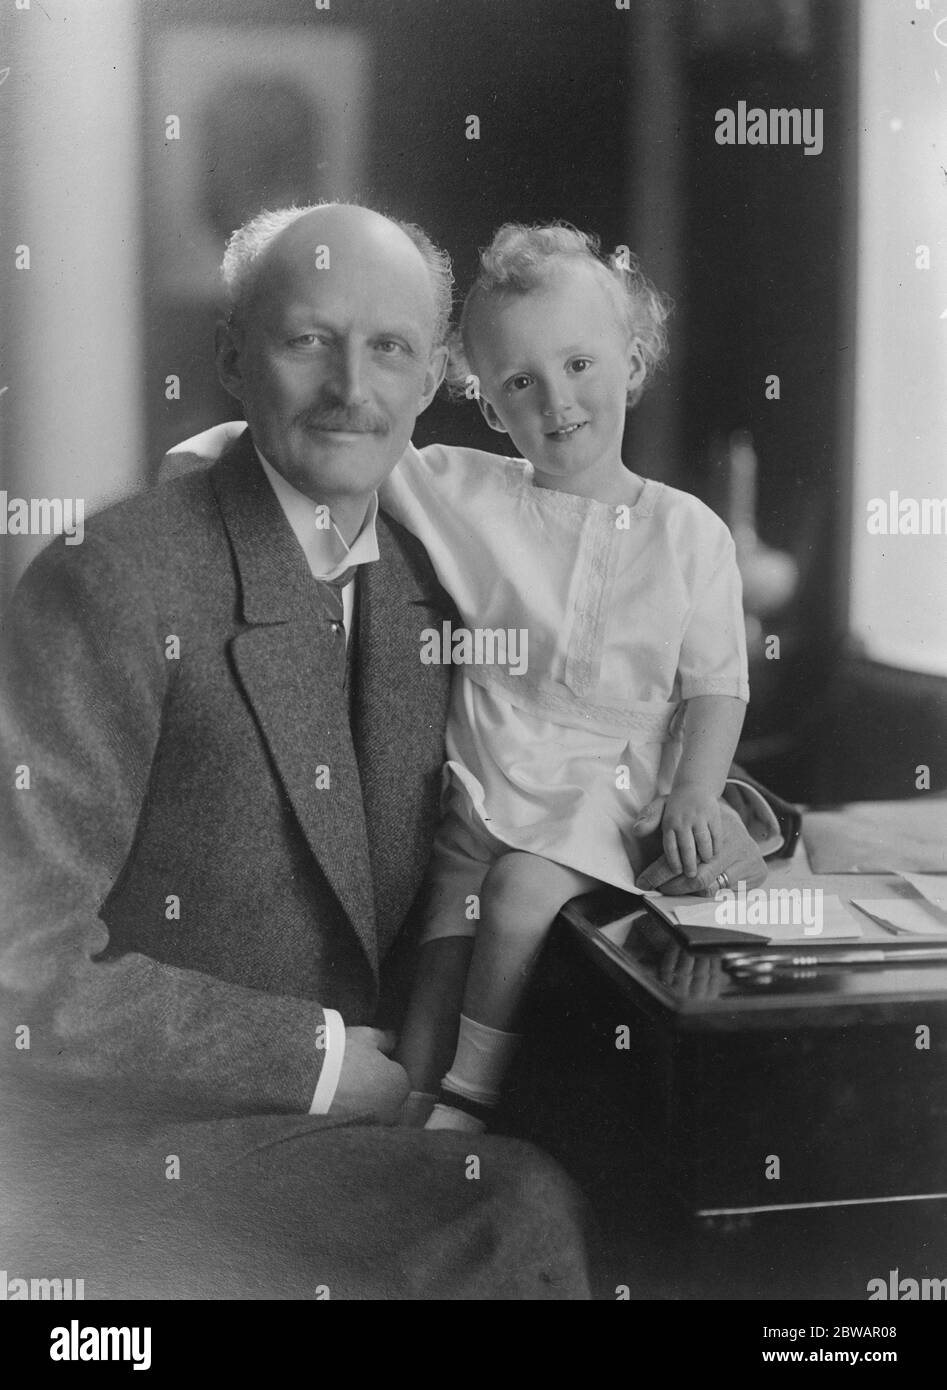 Prince Carl . La plus populaire royauté de Suède avec son petit-fils . Le prince Carl , président de la Croix-Rouge suédoise , avec son petit-fils de deux ans , qui en a fait la première photo , est le fils aîné du prince et de la princesse Axel du Danemark . 13 mai 1922 Banque D'Images